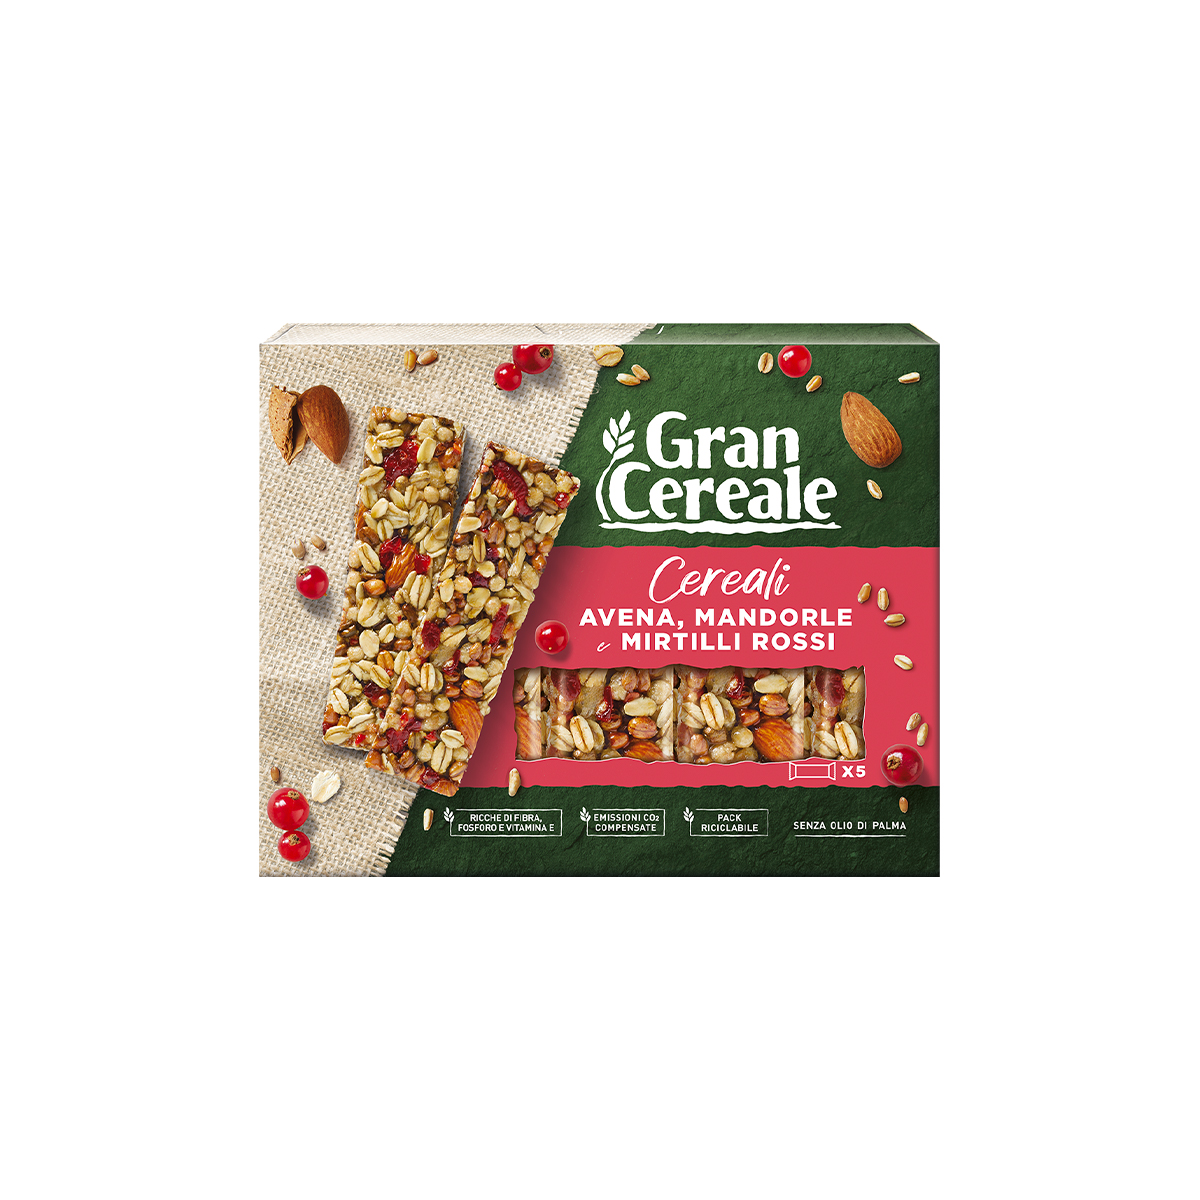 Gran Cereale 5 Barrette di Cereali, Avena, Mandorle e Mirtilli Rossi